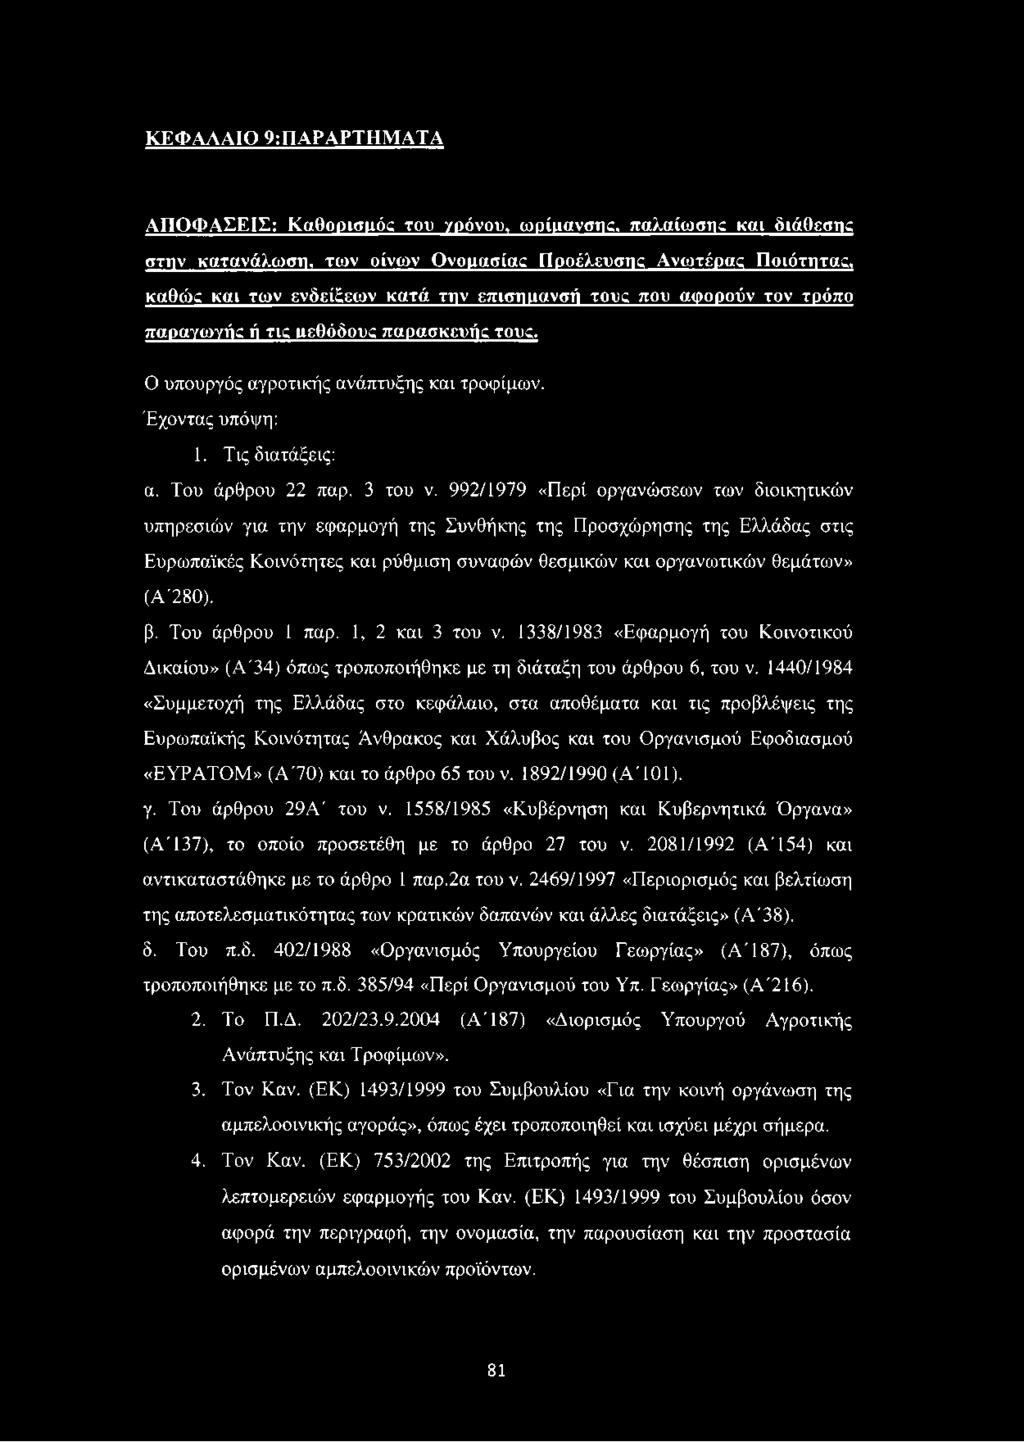 992/1979 «Περί οργανώσεων των διοικητικών υπηρεσιών για την εφαρμογή της Συνθήκης της Προσχώρησης της Ελλάδας στις Ευρωπαϊκές Κοινότητες και ρύθμιση συναφών θεσμικών και οργανωτικών θεμάτων» (Α'280).